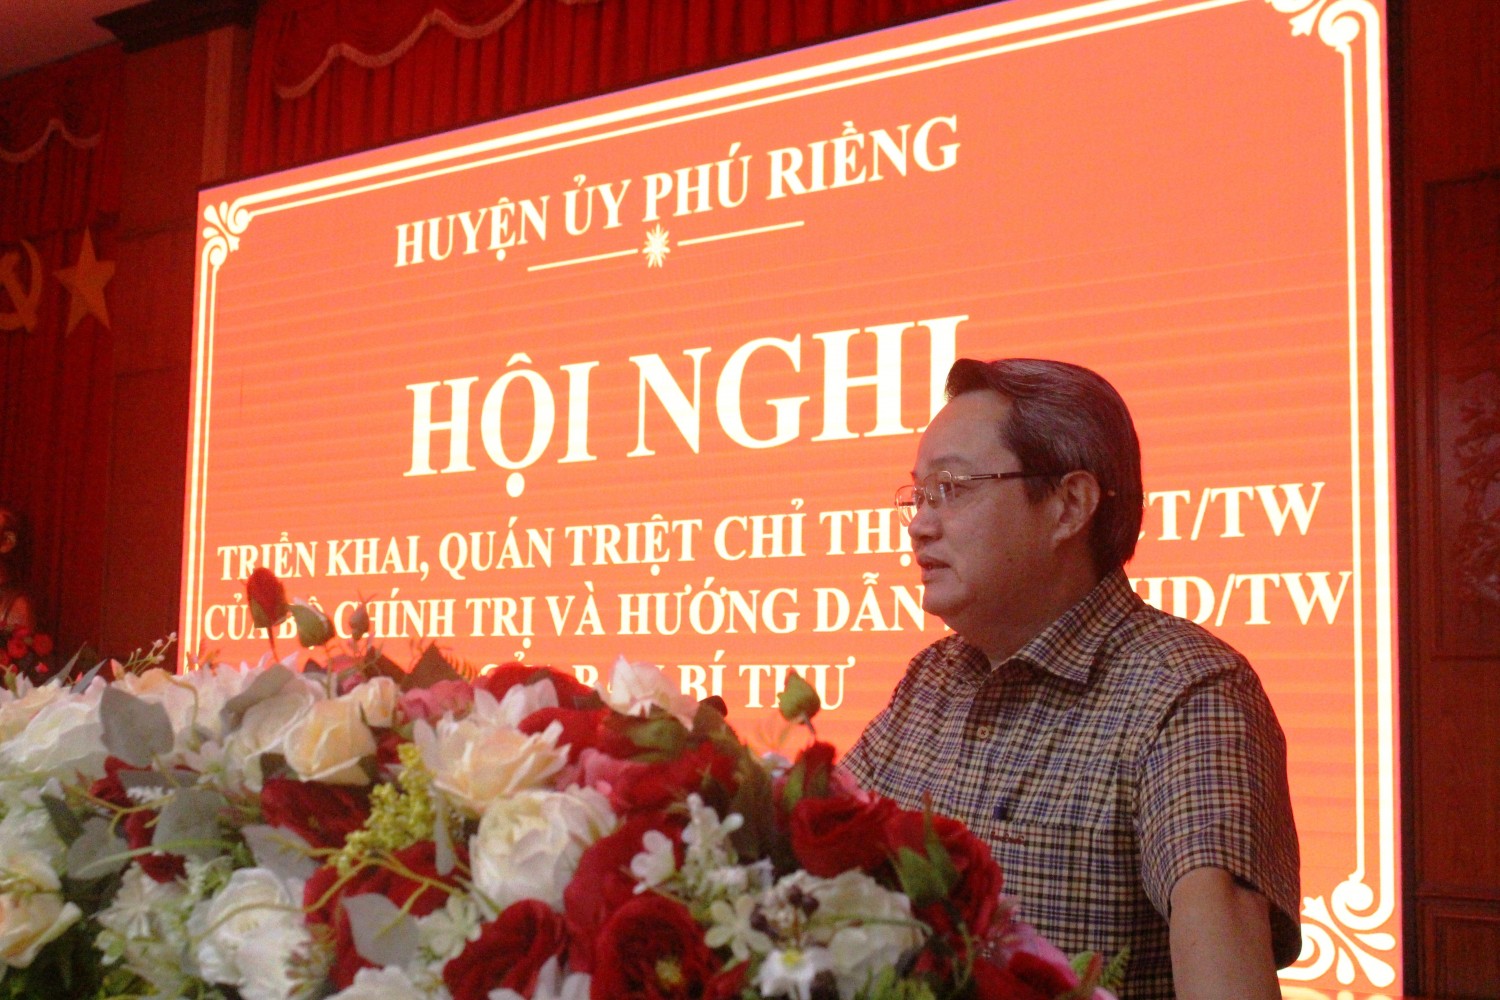 Huyện ủy Phú Riềng tổ chức hội nghị Quán triệt Chỉ thị số 26-CT/TW và Hướng dẫn số 04-HD/TW